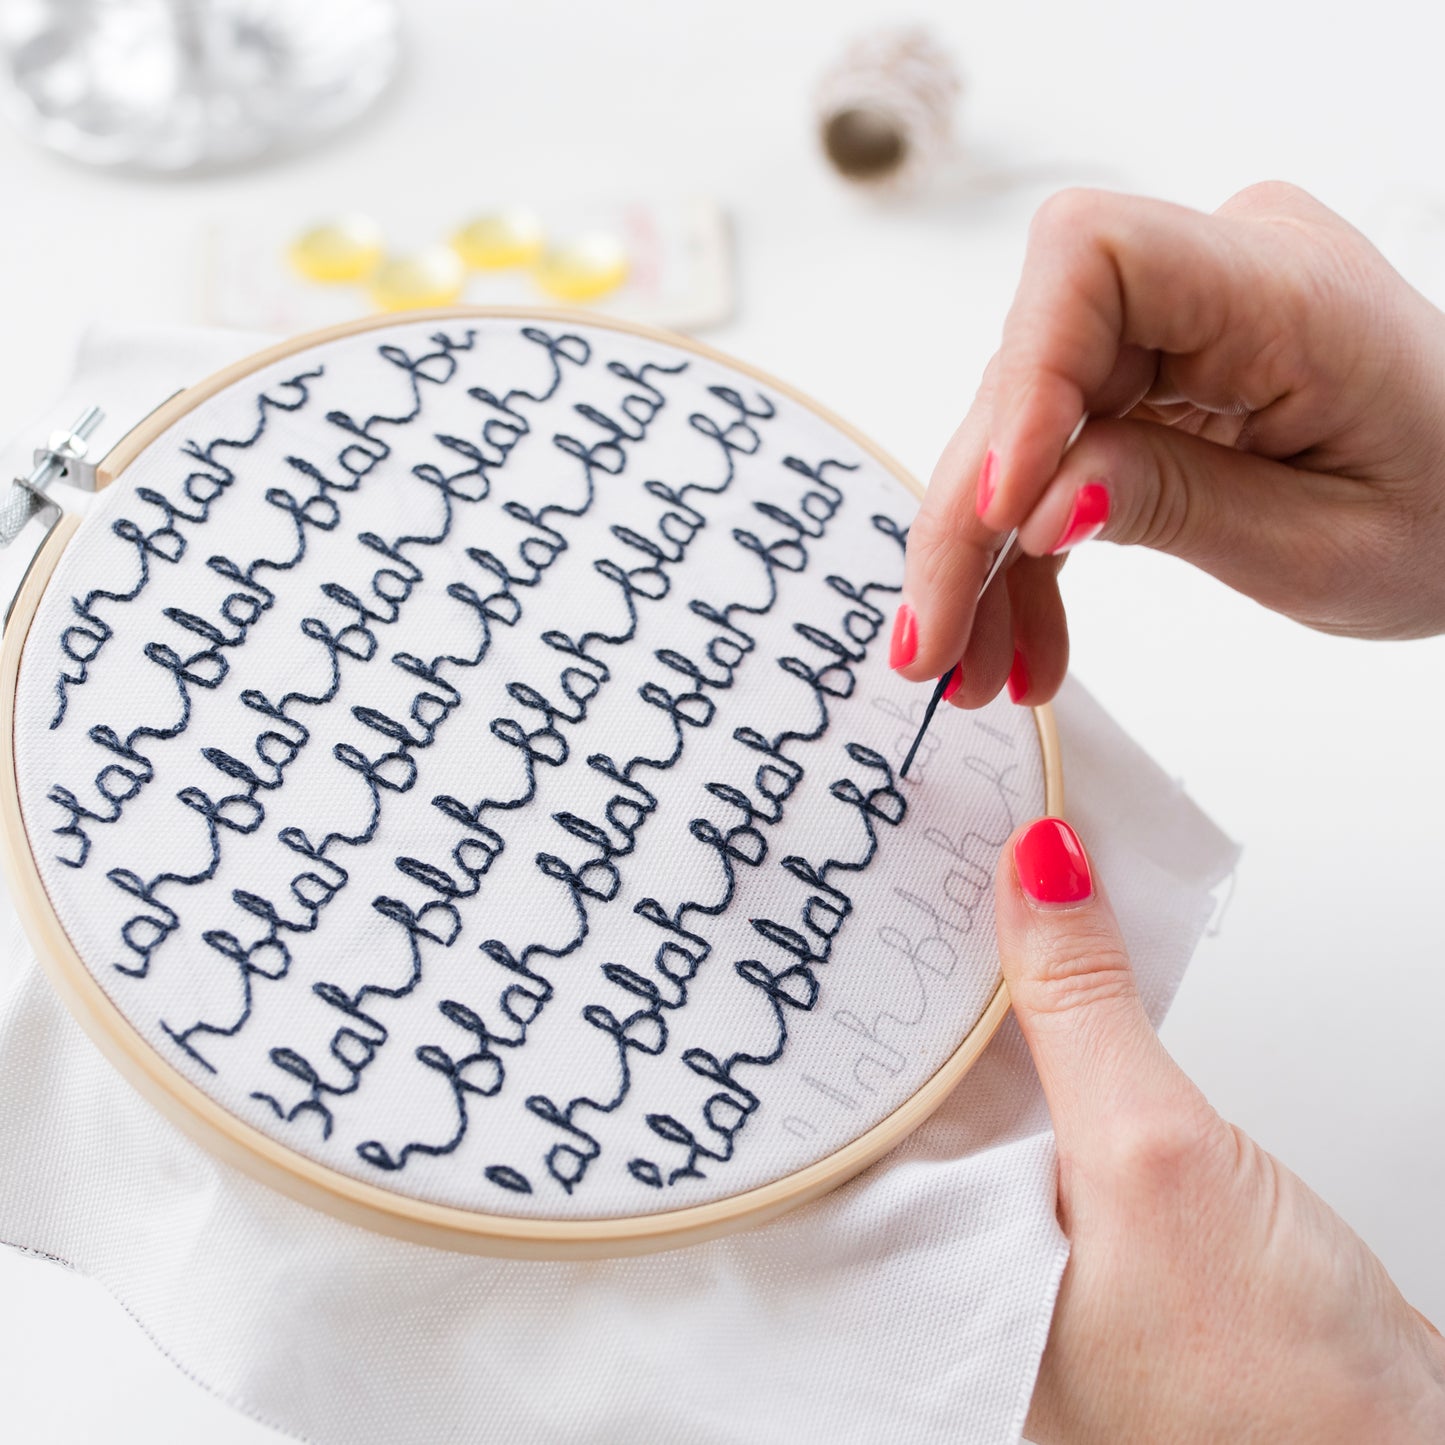 Donna Wilson Blah Blah Blah Hoop Embroidery Kit